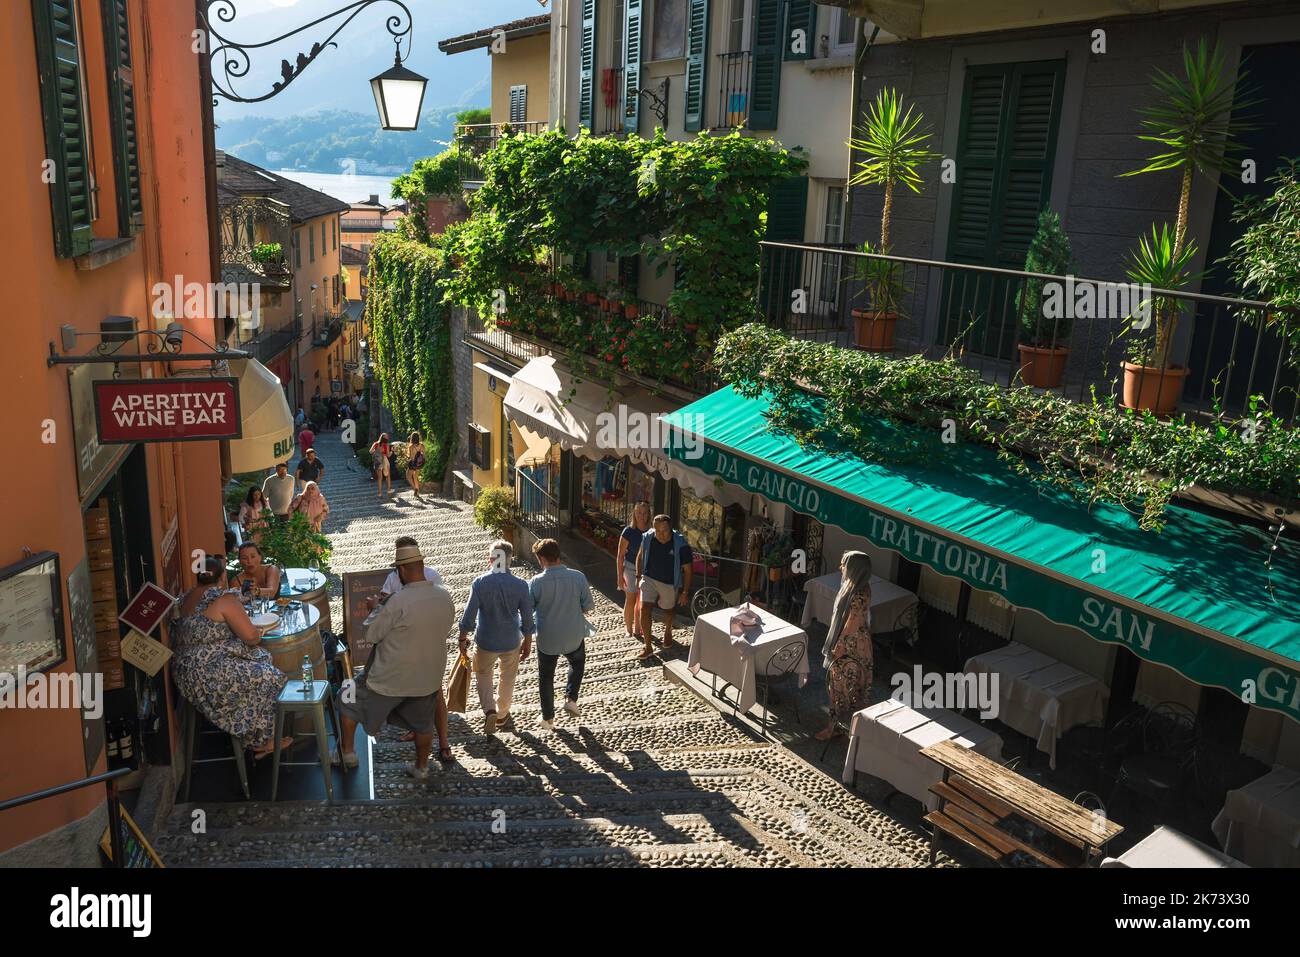 Ville de Bellagio, vue en été des touristes dans une petite rue pittoresque dans le centre de la vieille ville de Bellagio, Lombardie, Italie Banque D'Images